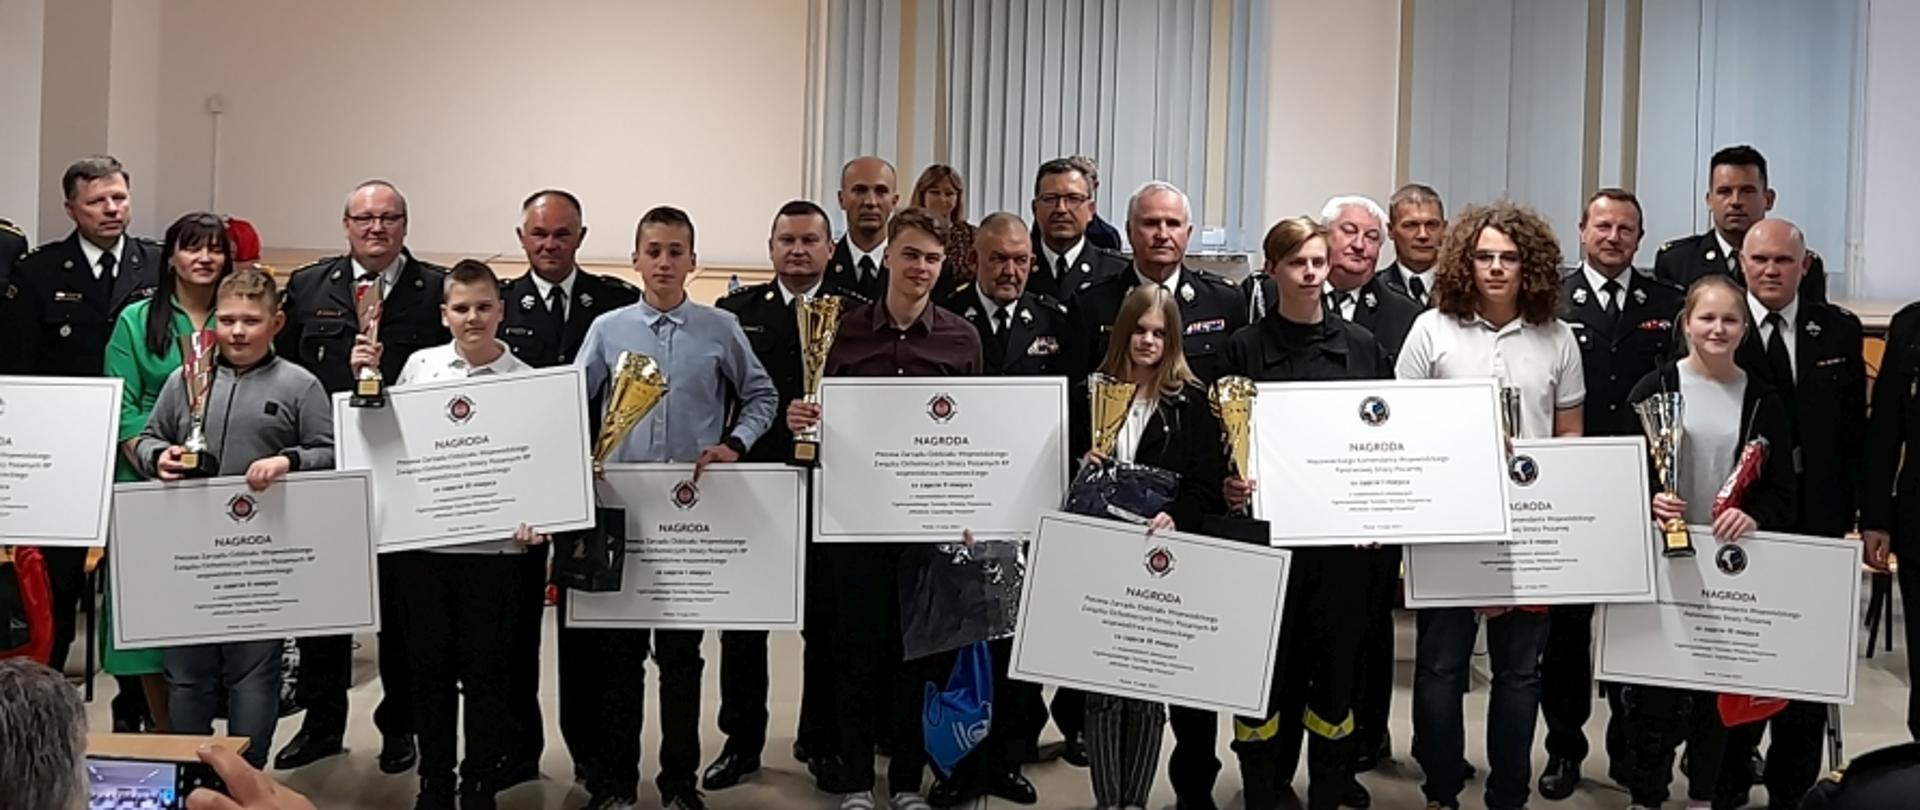 Zdjęcie grupowe uczestników konkursu, trzymających dyplomy, puchary i nagrody rzeczowe. Za nimi stoją strażacy PSP i OSP w mundurach wyjściowych.